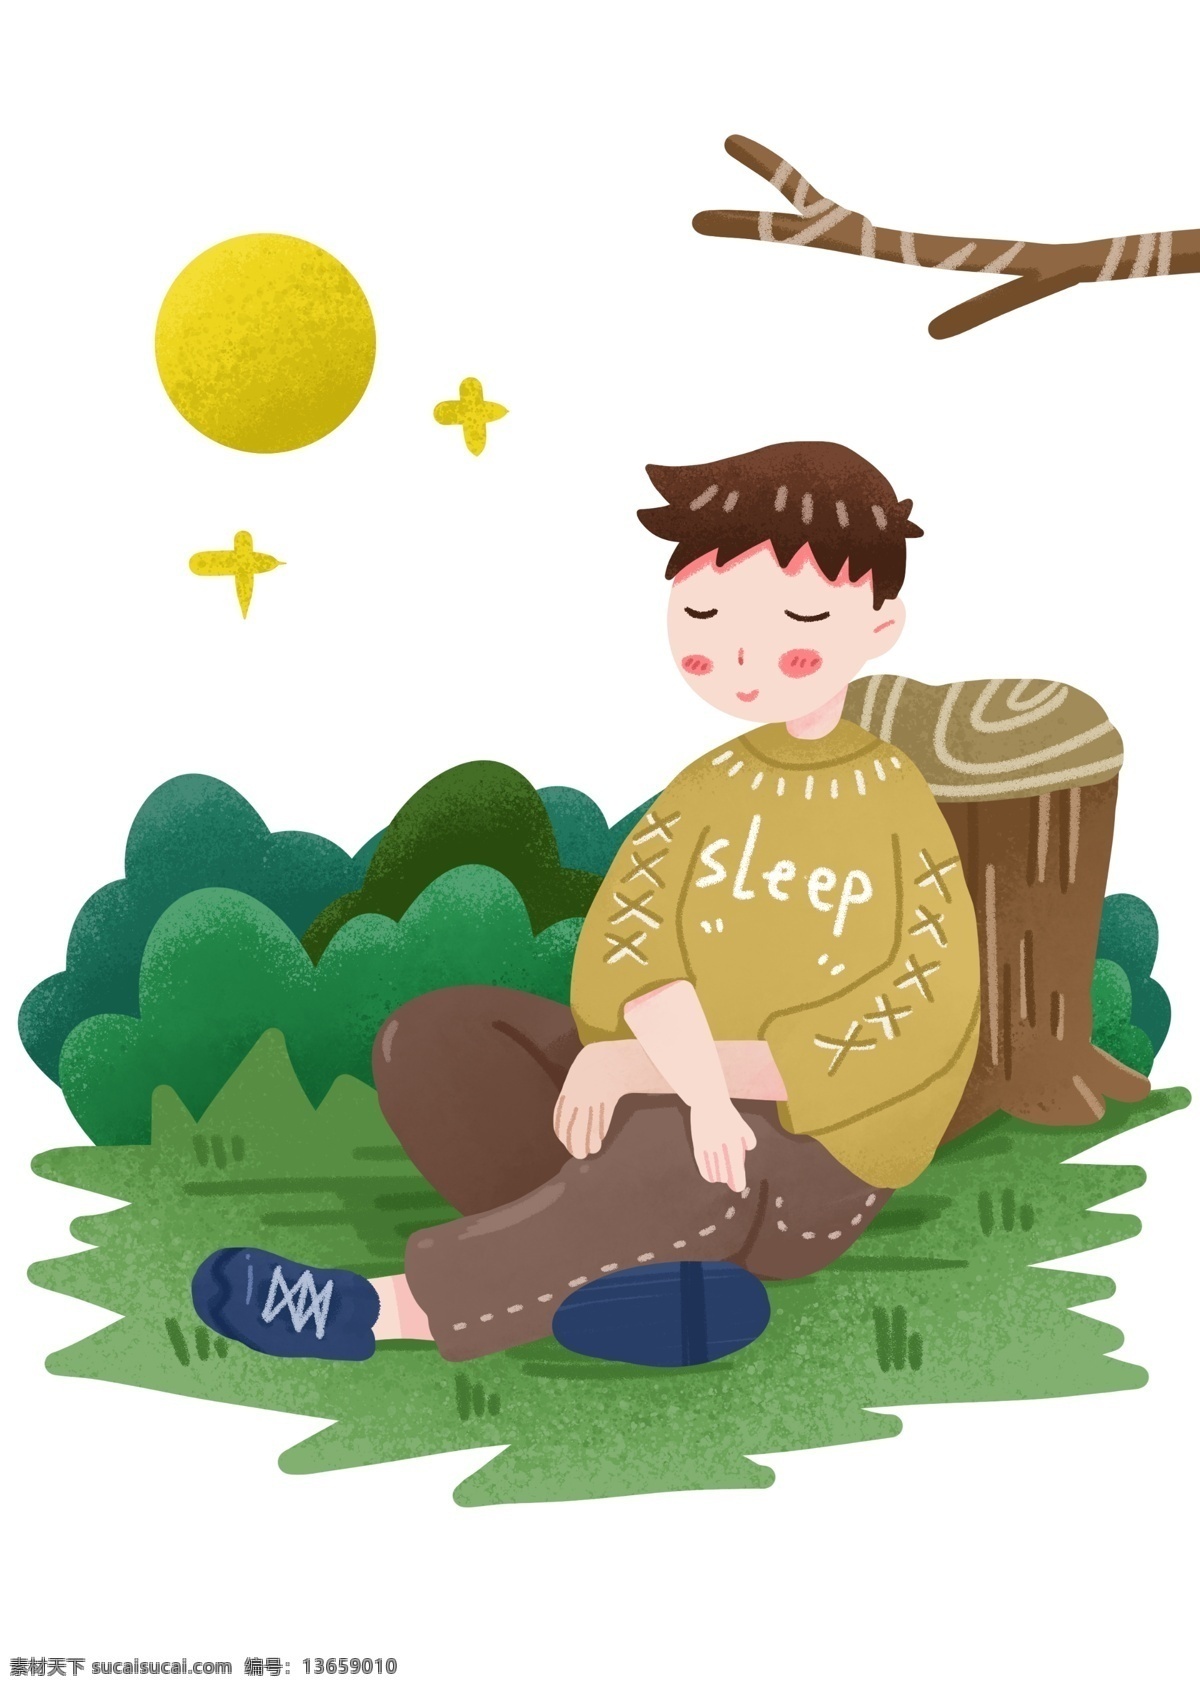 靠着 树桩 睡觉 男孩 世界睡眠日 睡觉的小男孩 大自然睡觉 创意节日 绿色植物 树木 卡通插画